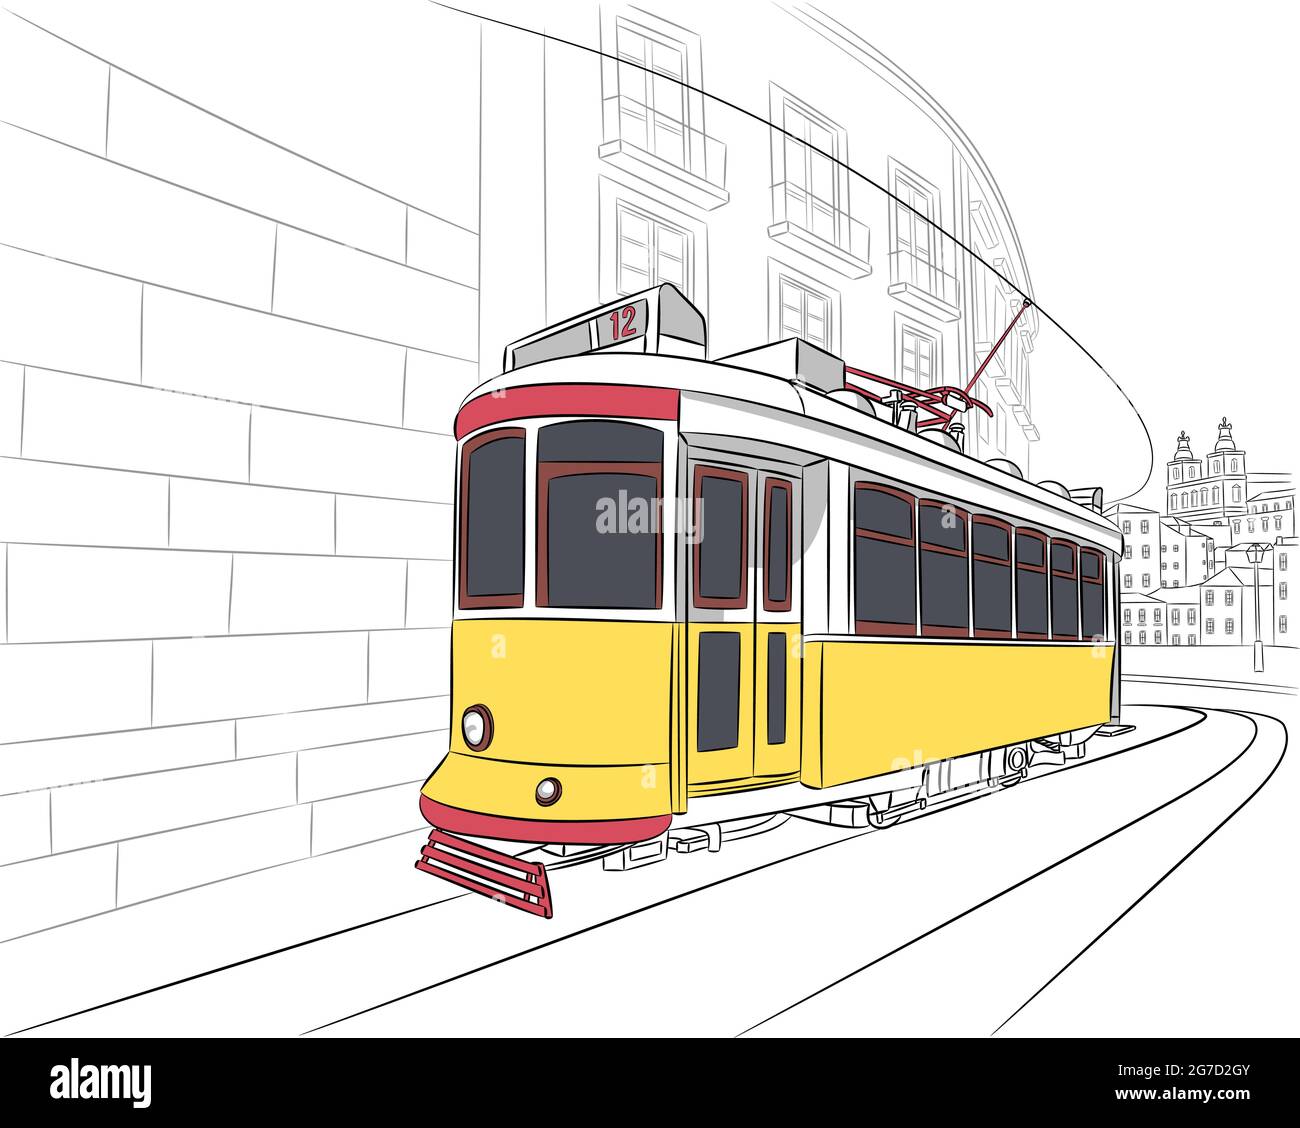 Alte gelbe Touristenbahn im Alfama-Viertel. Lissabon. Portugal. Stock Vektor